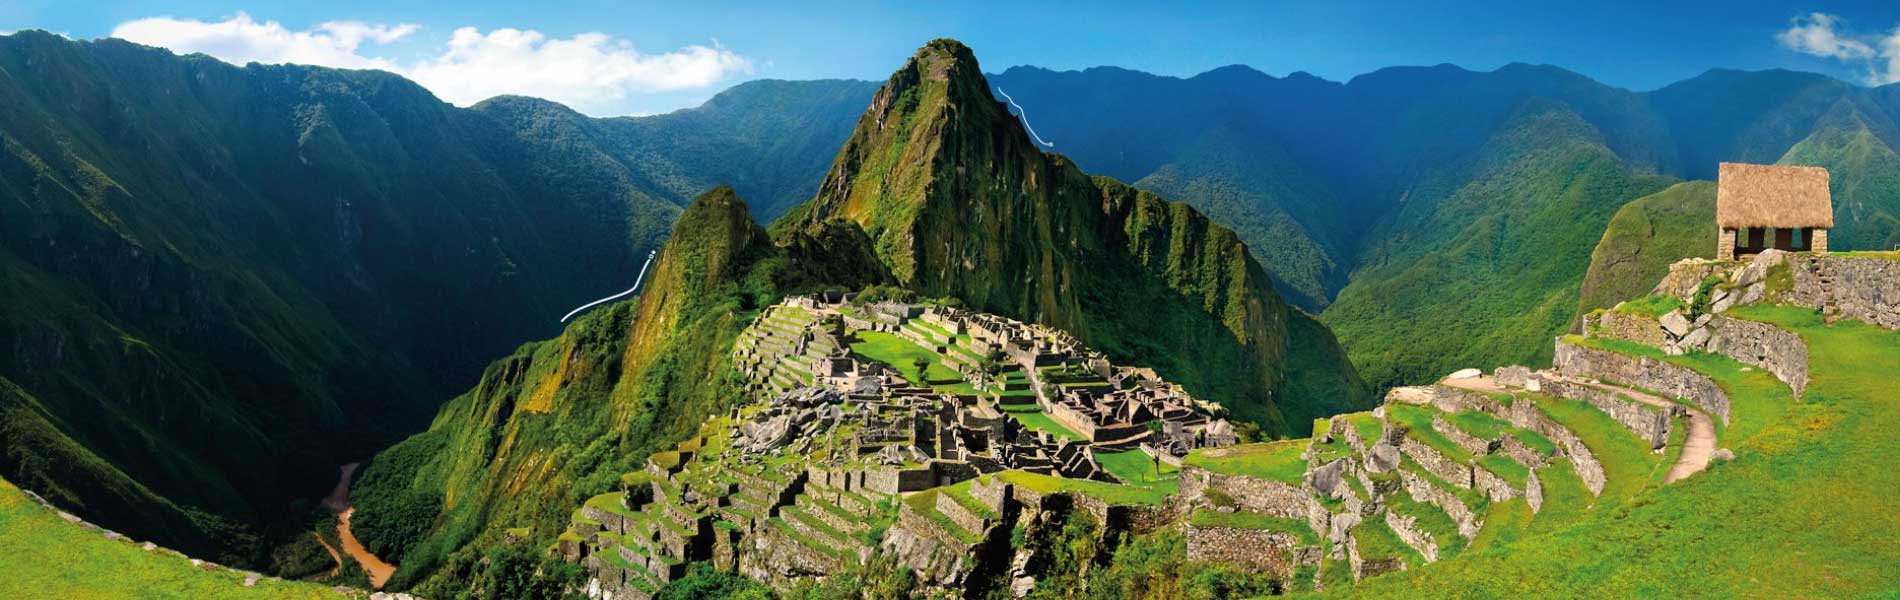 Peru Travel